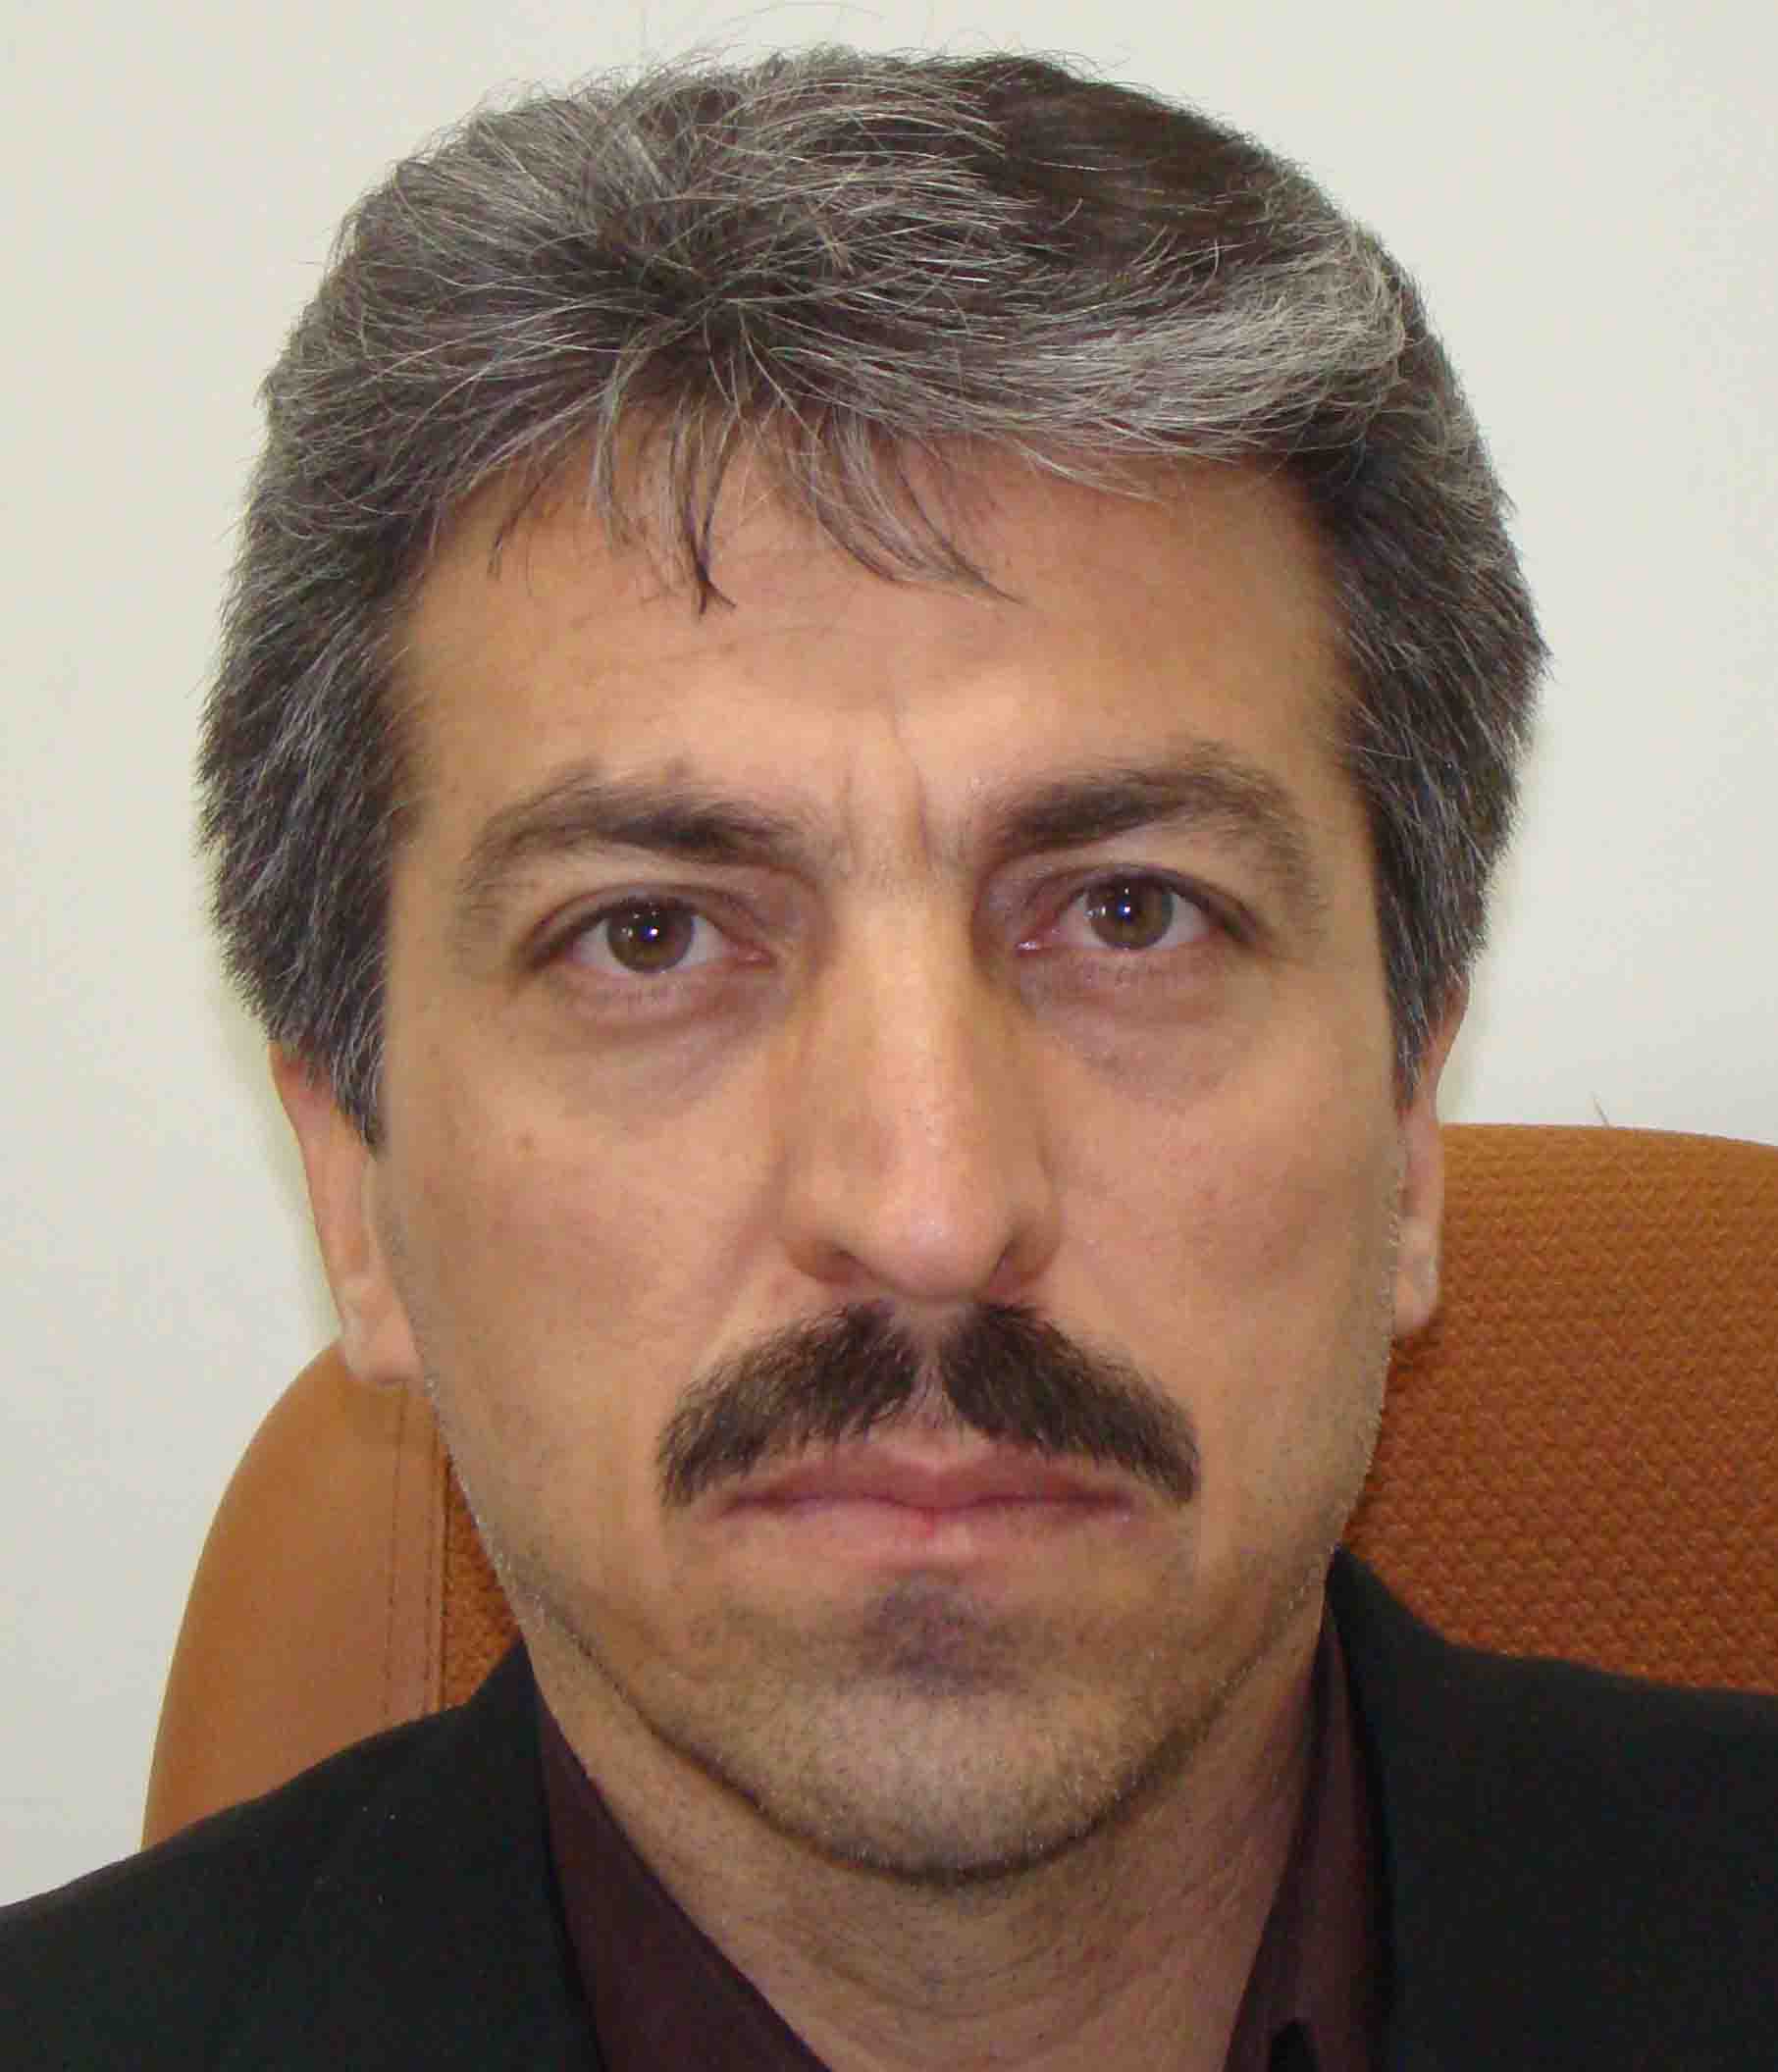  حسین وزیری نژاد - سرپرست منطقه 2